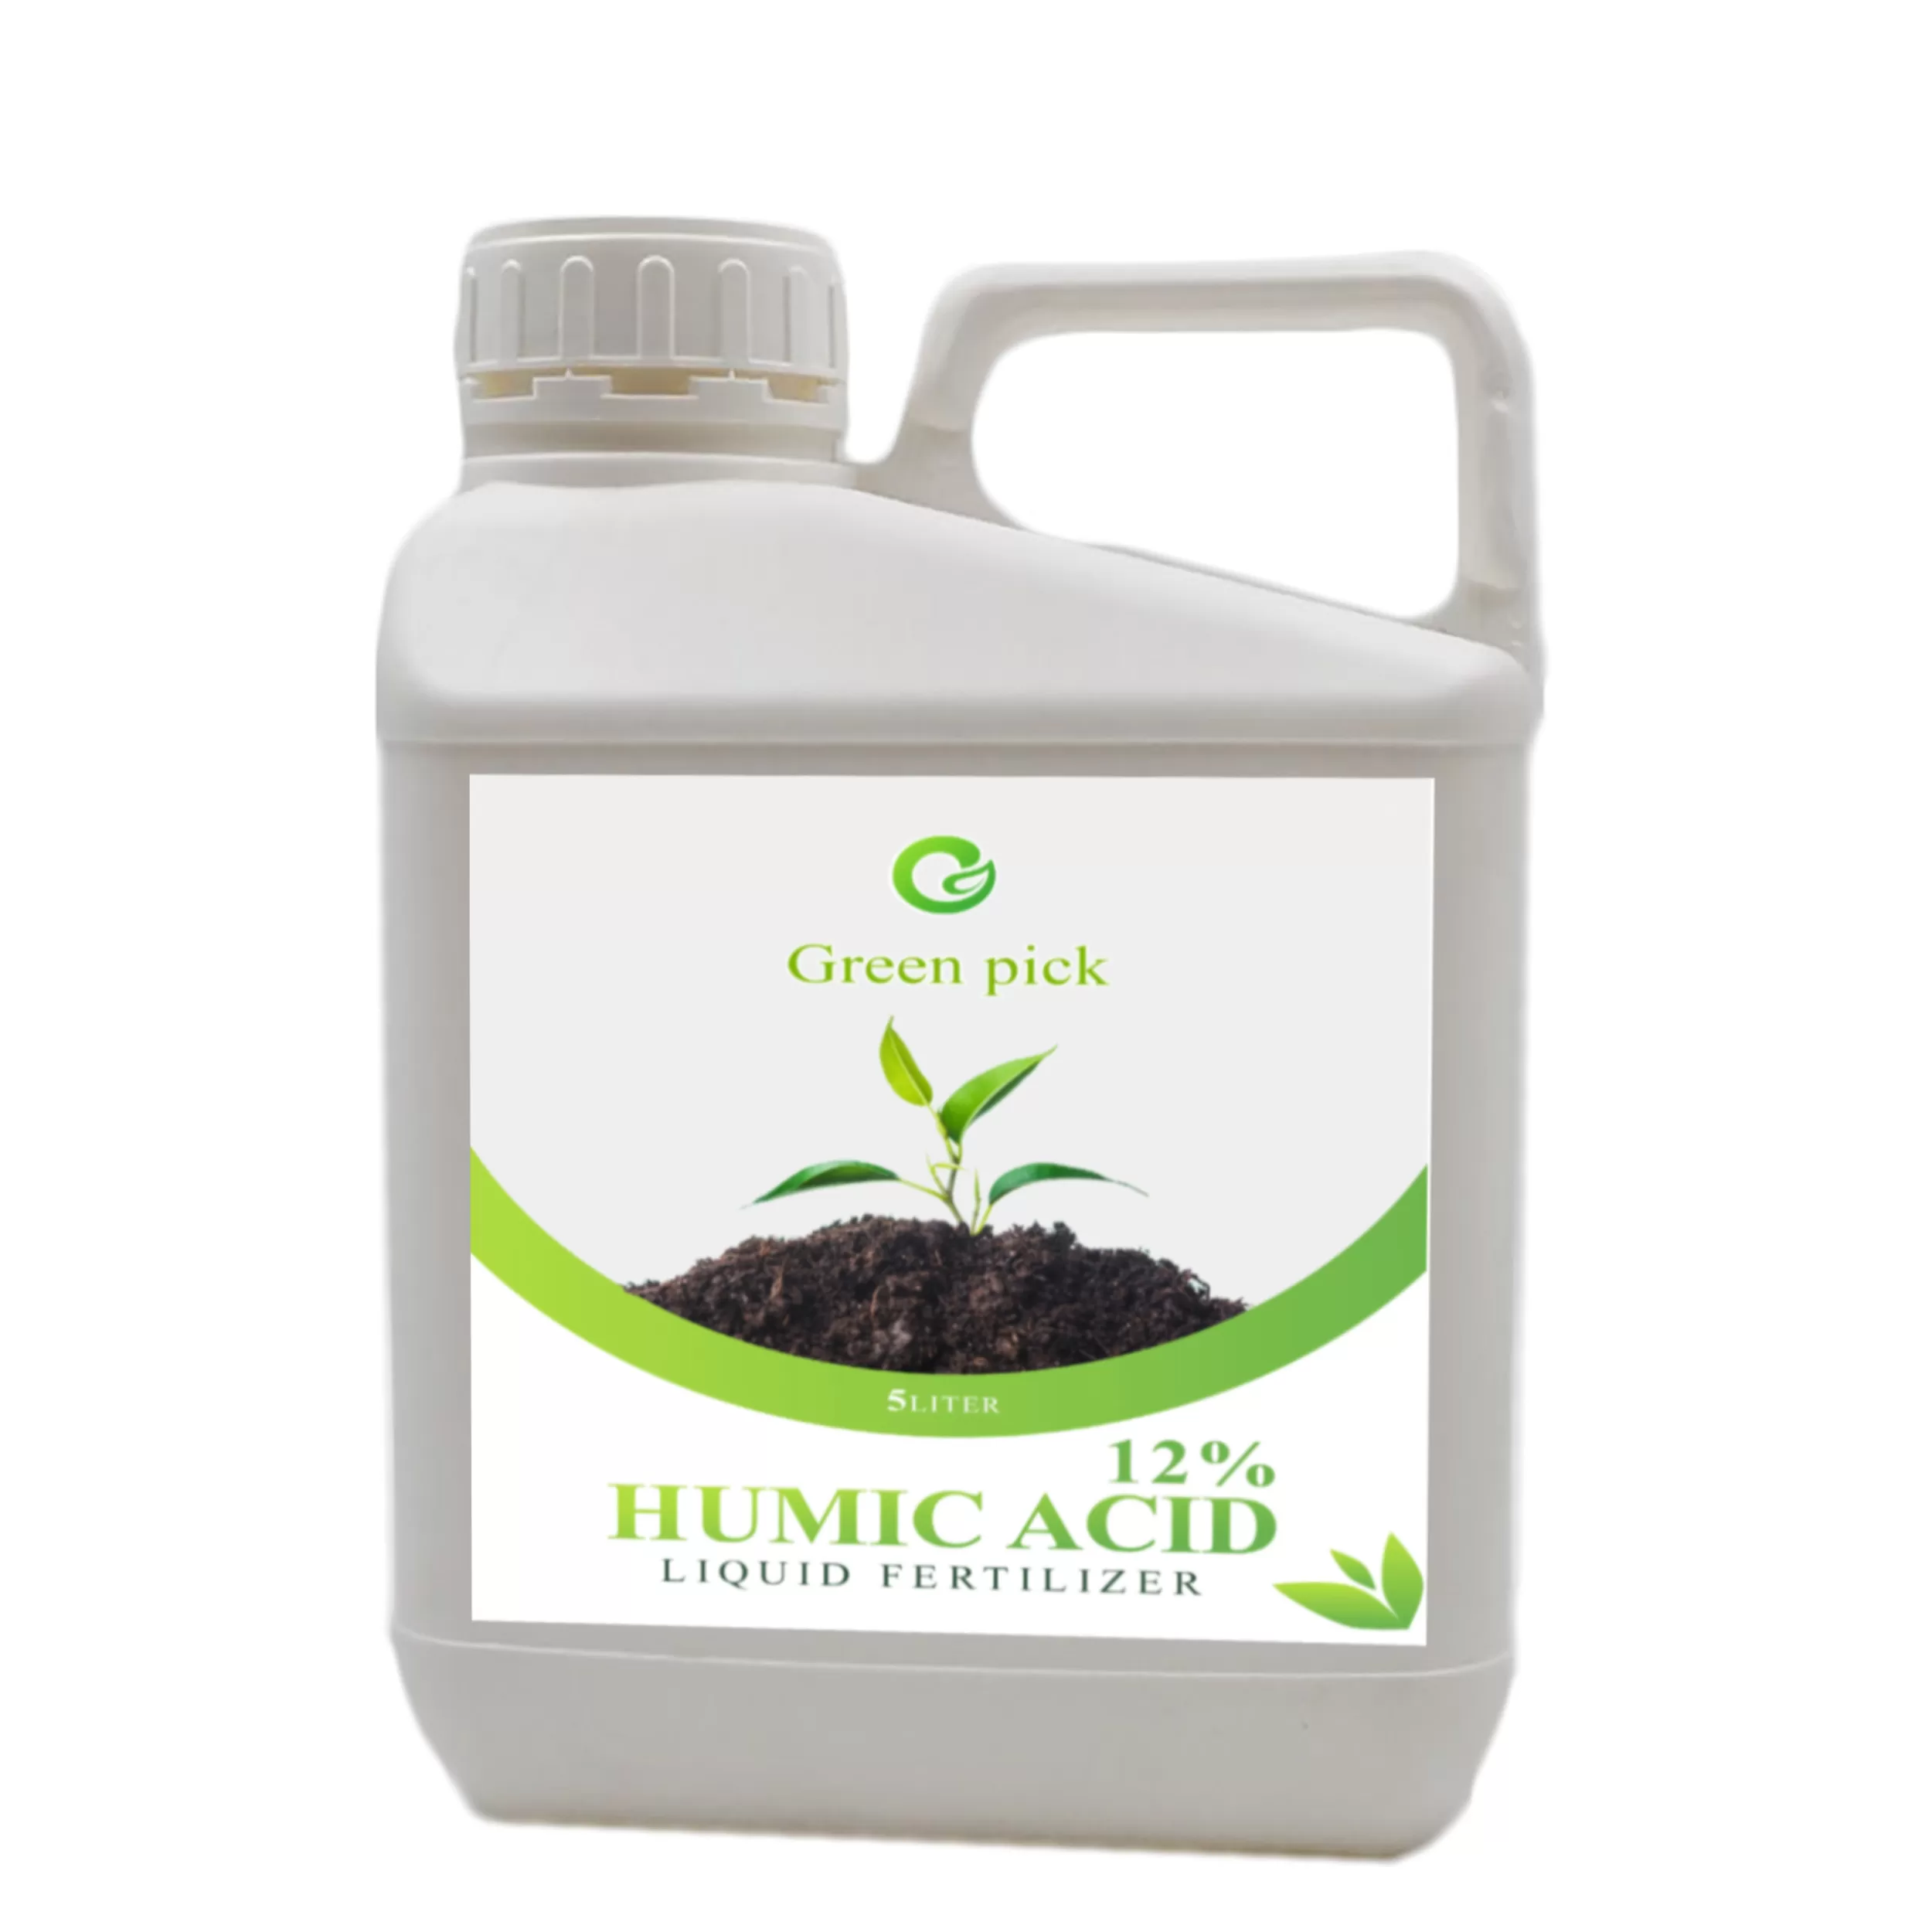 خرید و قیمت کود مایع هیومیک اسید گرین پیک مدل Hu5000 حجم 5 لیتر